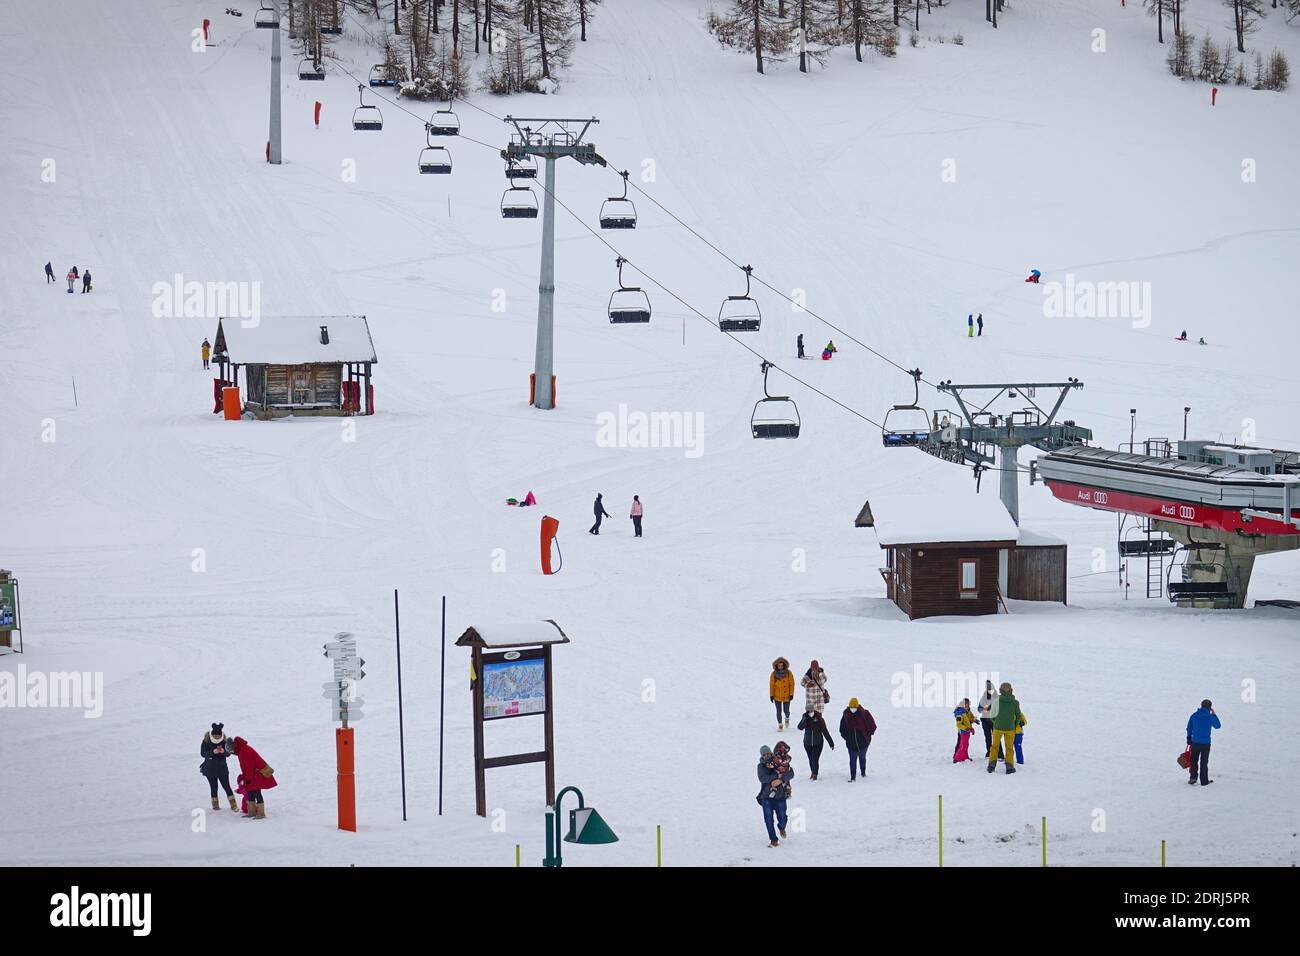 Skipisten wegen Pandemie über Weihnachten geschlossen, nur wenige Touristen mit Kindern spielen im Schnee mit Bob. Sestriere, Italien - Dezember 2020 Stockfoto